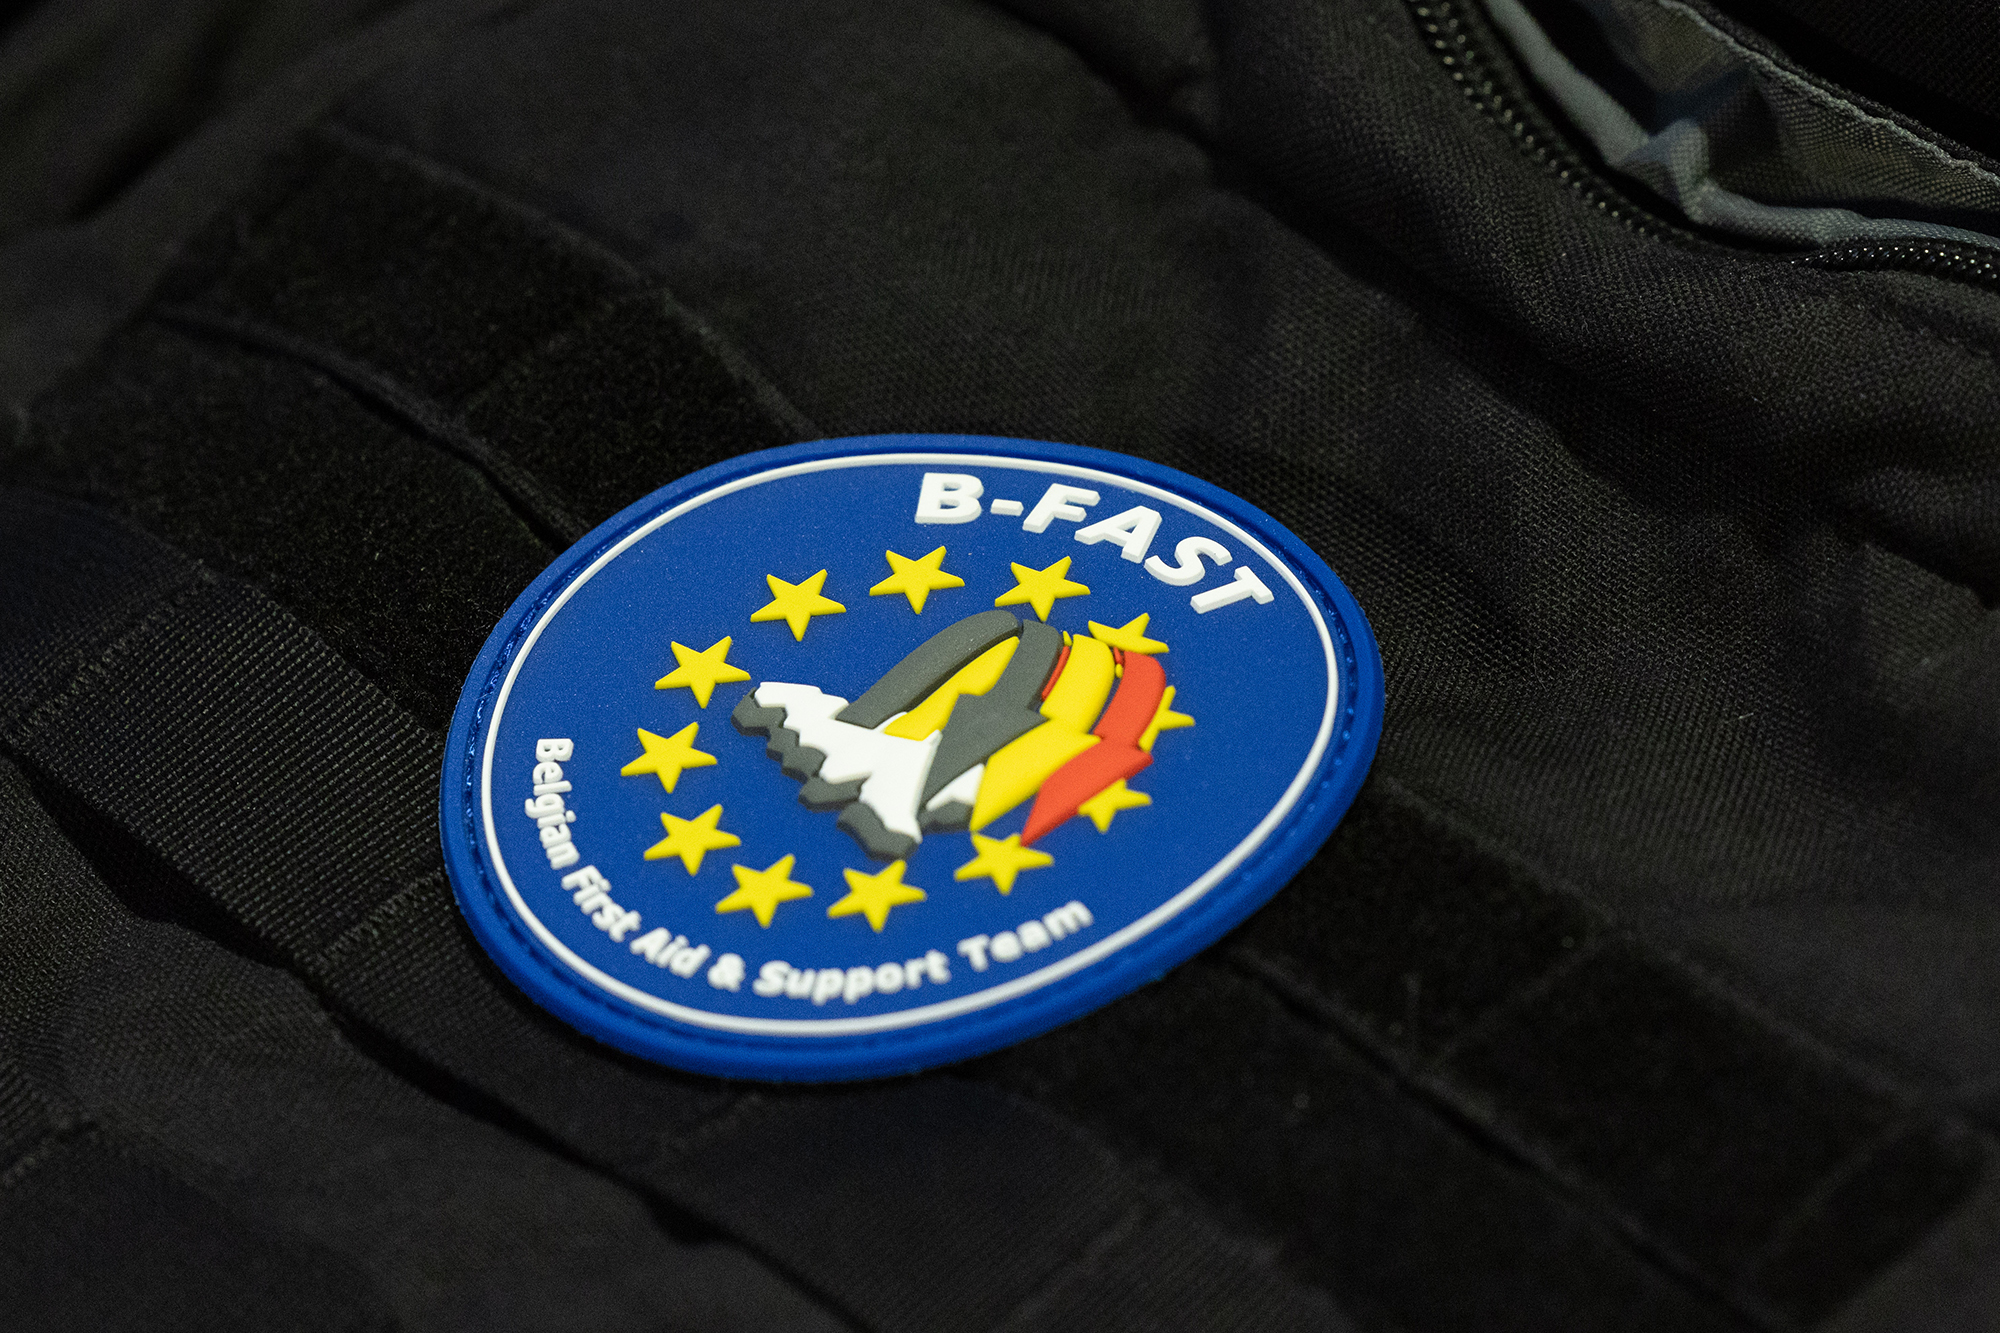 Das B-Fast-Einsatzteam wird in Katastrophenlage zur Unterstützung losgeschickt (Illustrationsbild: Benoit Doppagne/Belga)